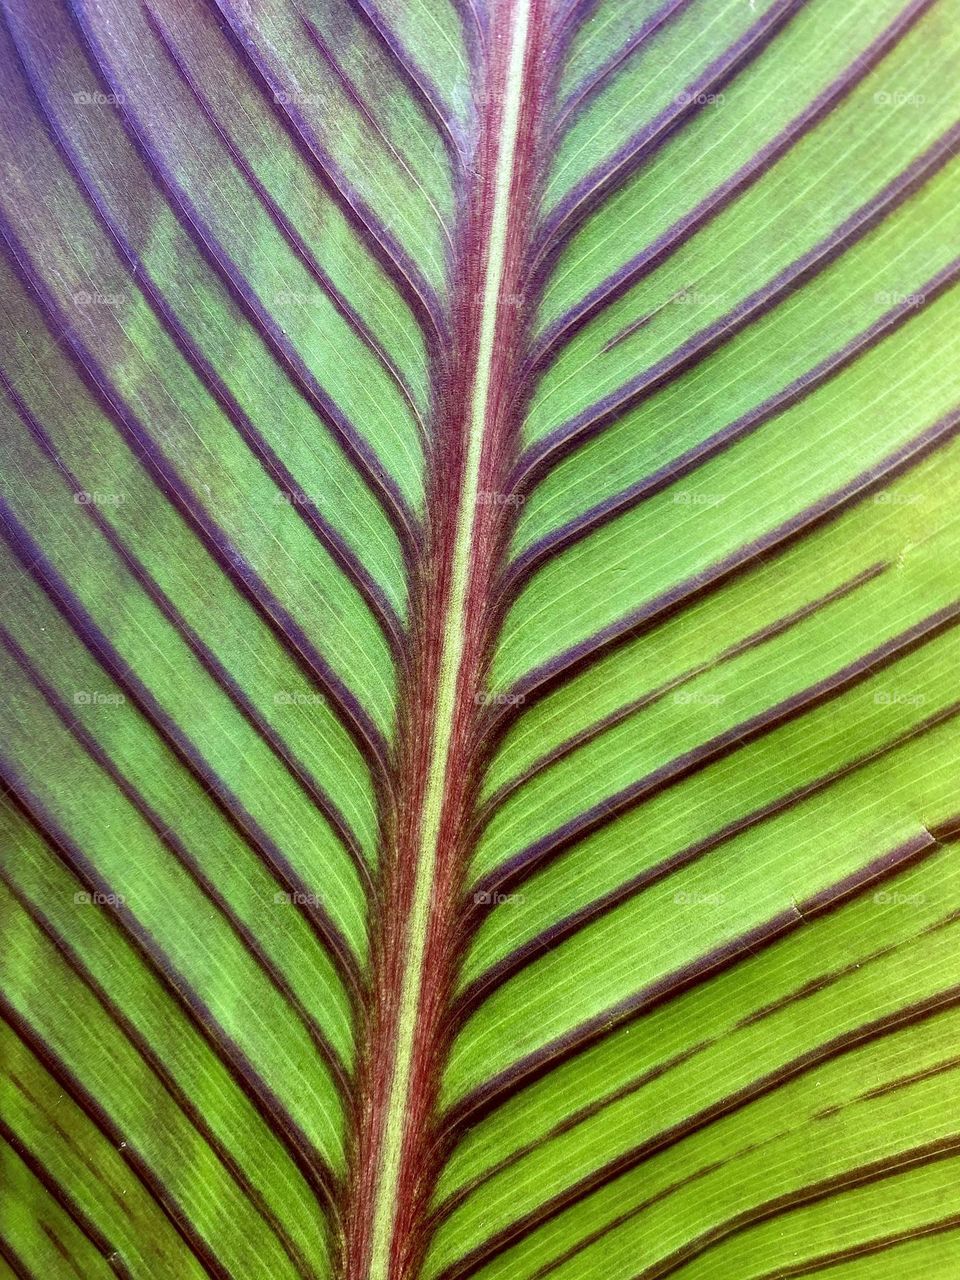 Spine of leaf